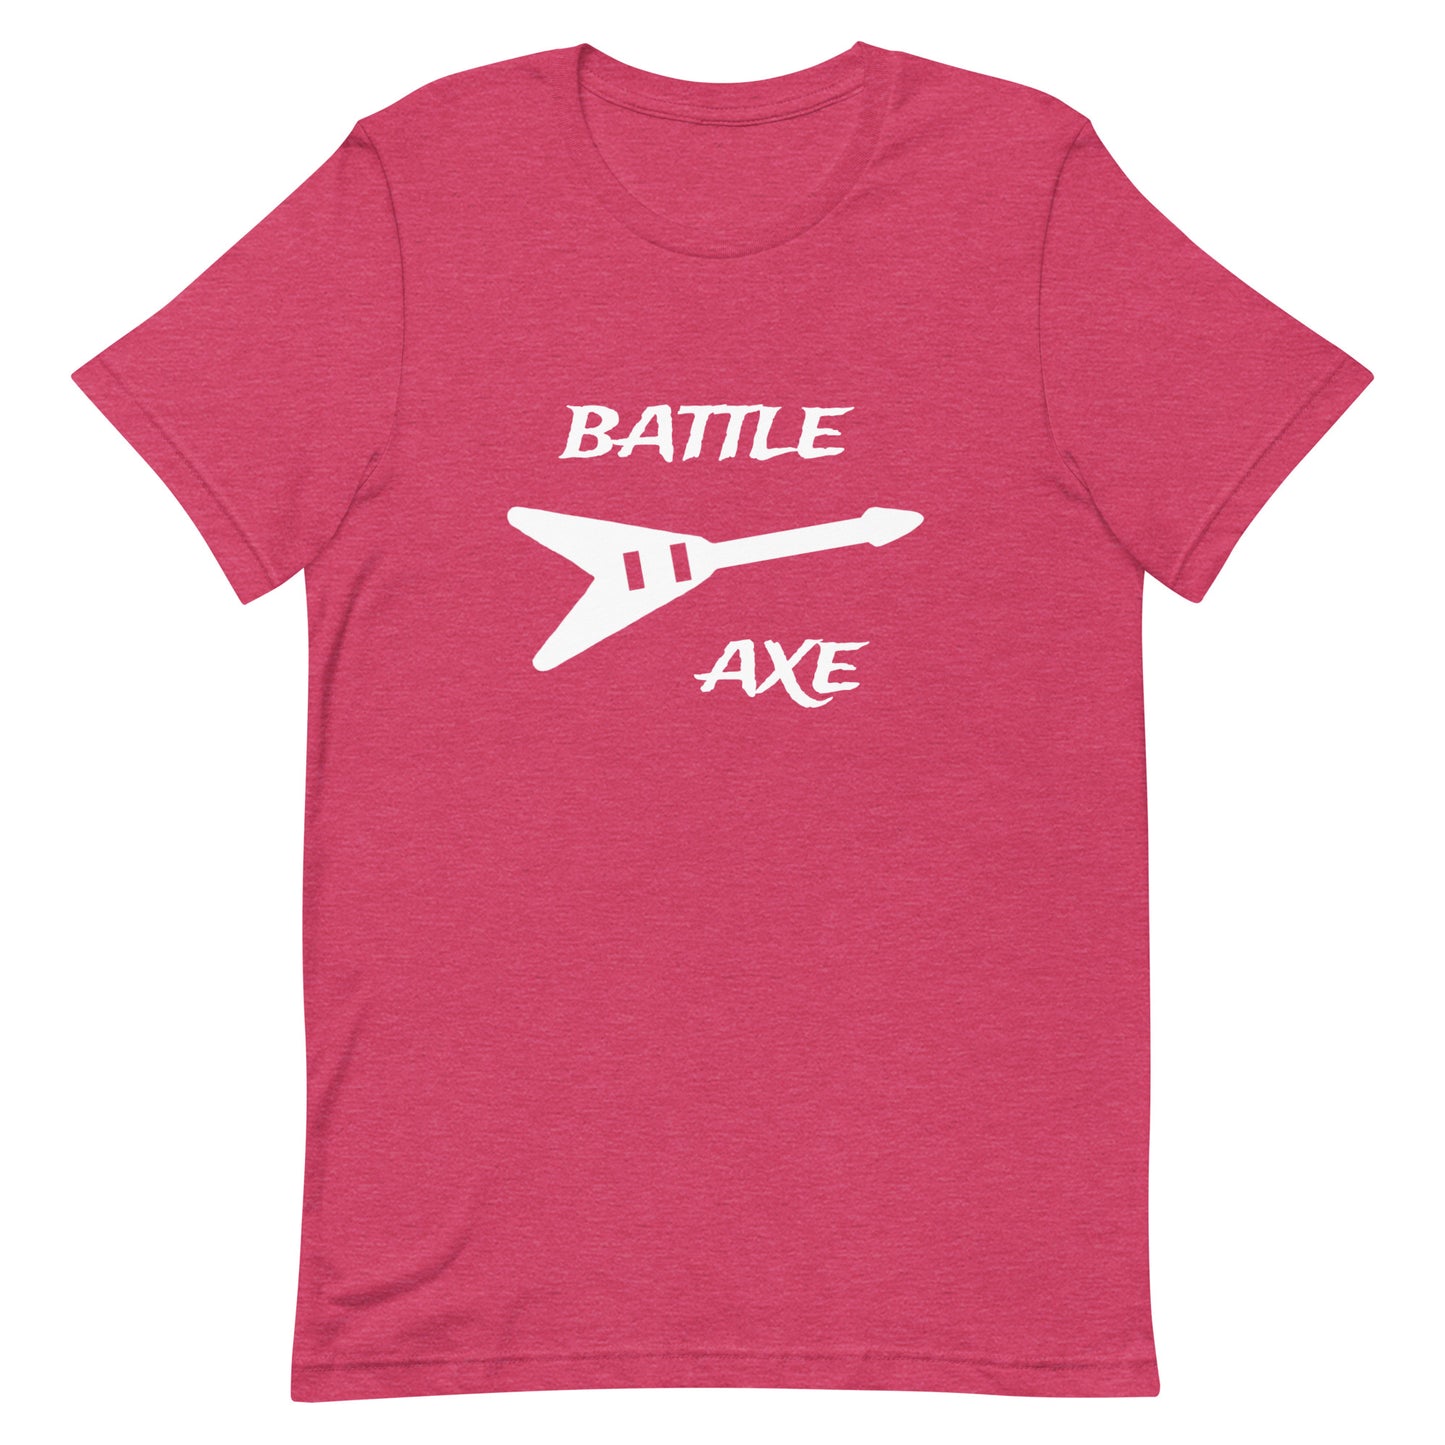 Battleaxe 8